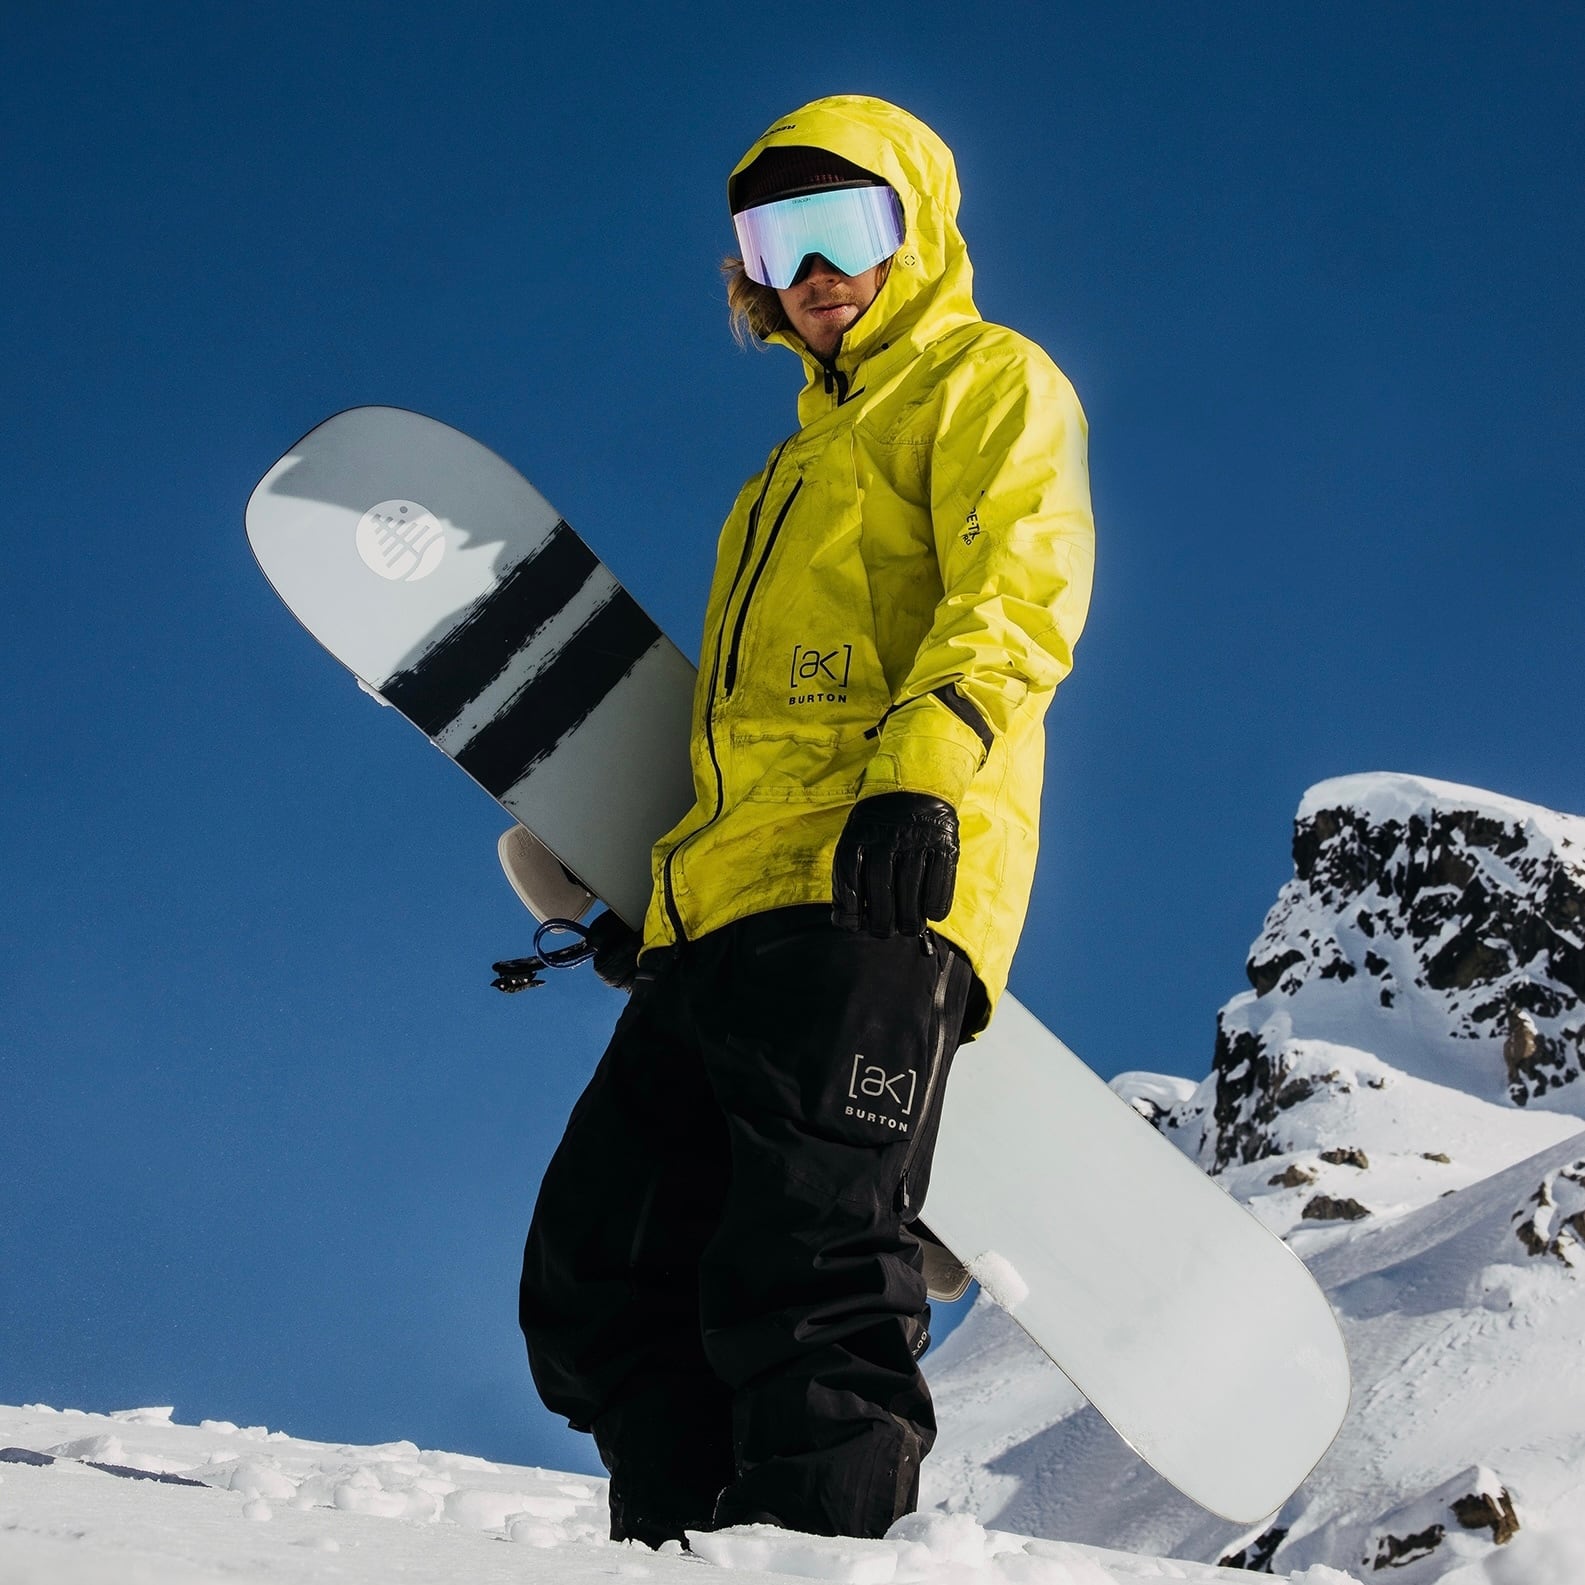 Men's Burton【ak】タスク GORE-TEX Pro 3L ハイトップ ビブパンツ snowboard スノーボード ウェア タスクパンツ  ゴアテックス カービング パウダー バックカントリー フリーラン オールマウンテン オールラウンド メンズ レディース